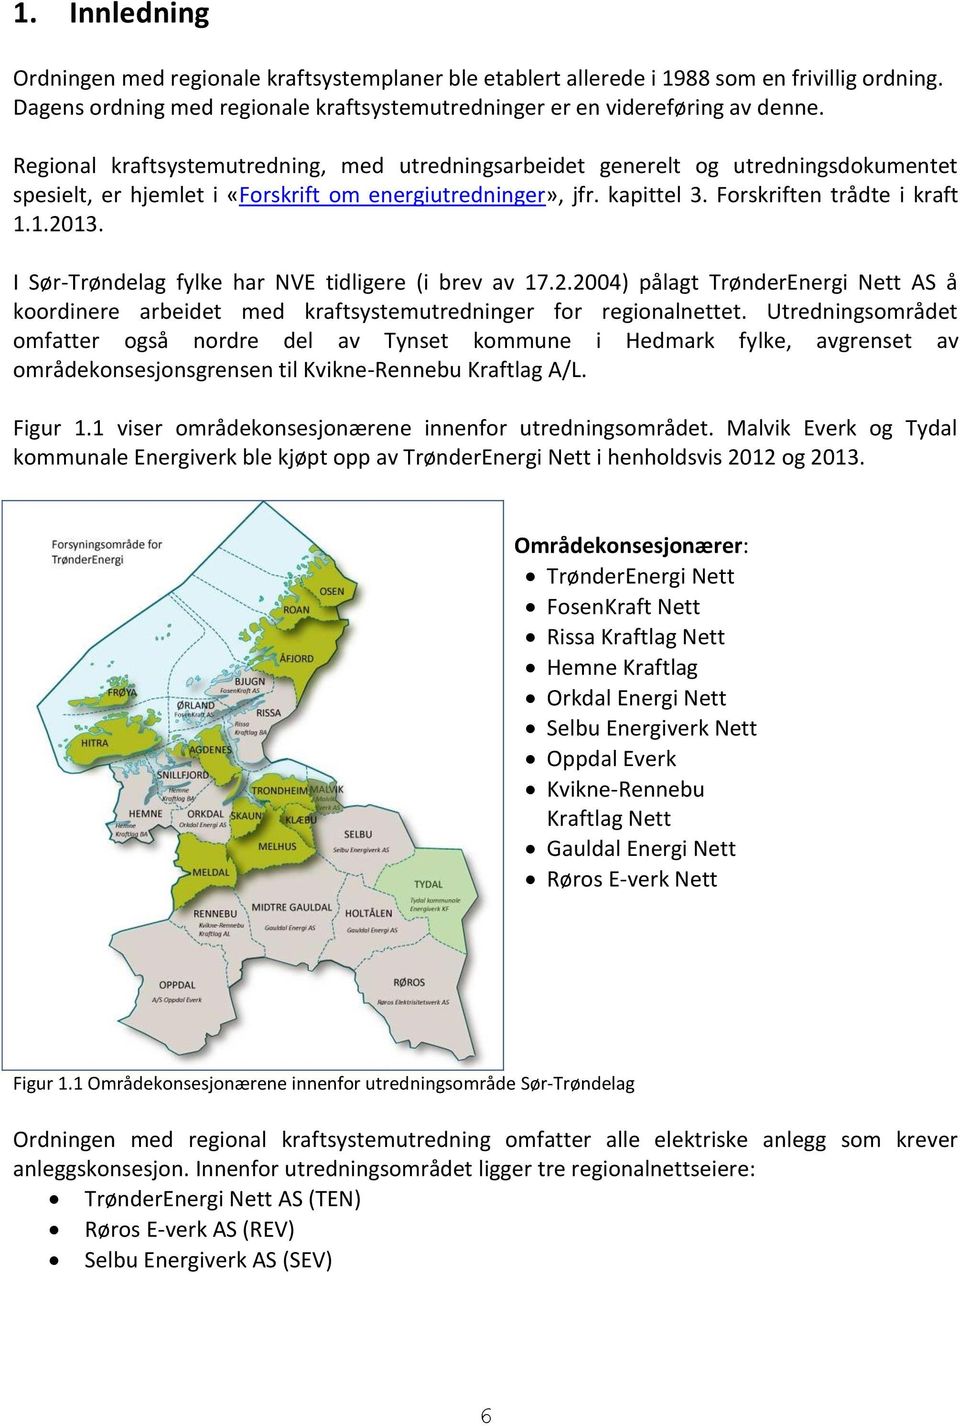 I Sør-Trøndelag fylke har NVE tidligere (i brev av 17.2.2004) pålagt TrønderEnergi Nett AS å koordinere arbeidet med kraftsystemutredninger for regionalnettet.